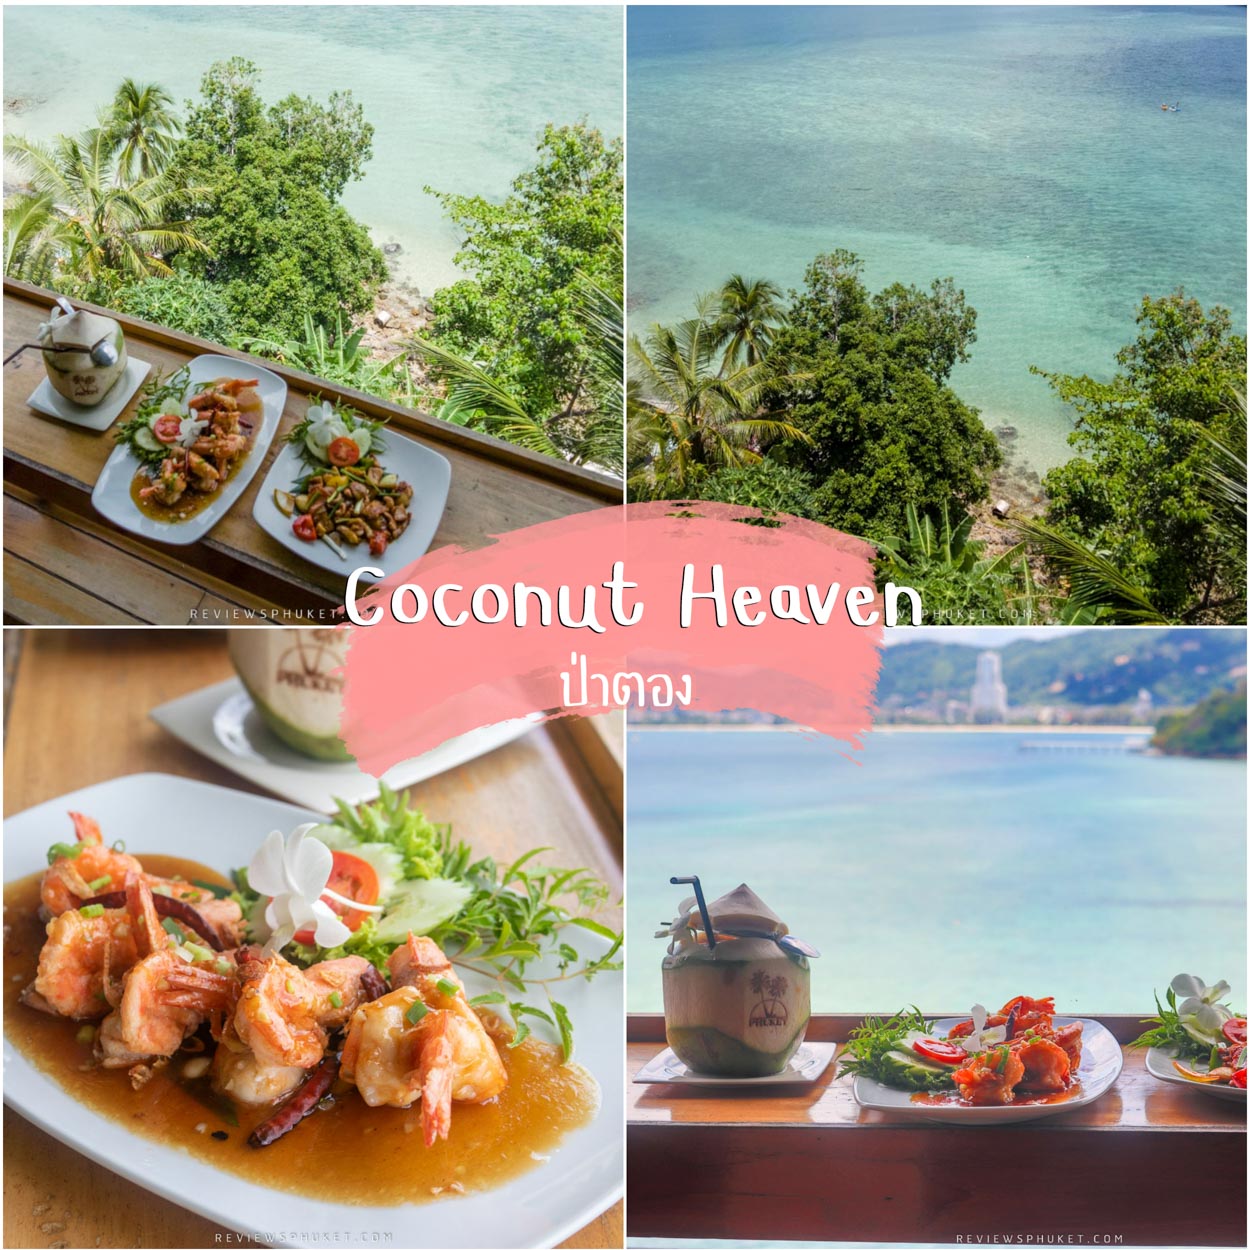 Coconut Heaven Patong, лучший ресторан с видом на миллион долларов, в котором в качестве фирменного знака ресторана используется кокос или кокос.